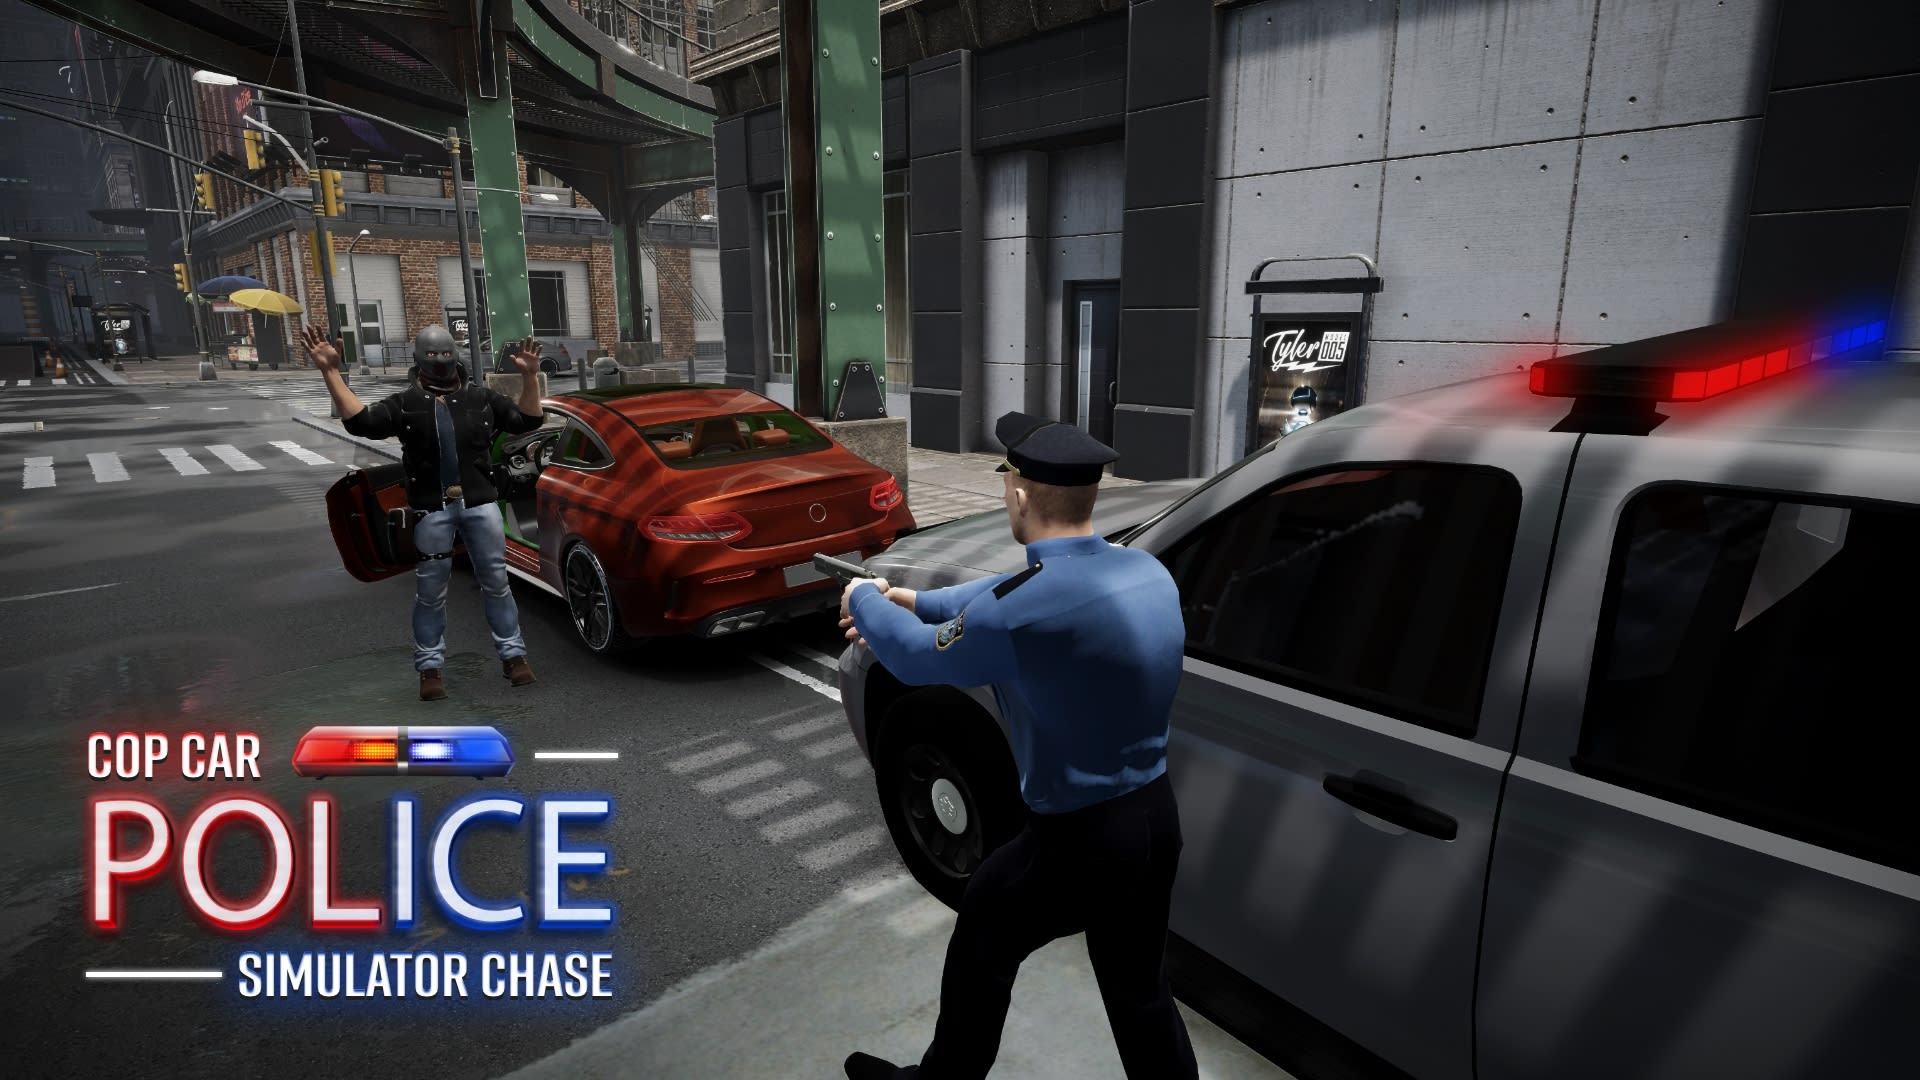 Cop Car Police Simulator Chase - Car games simulator & driving 1